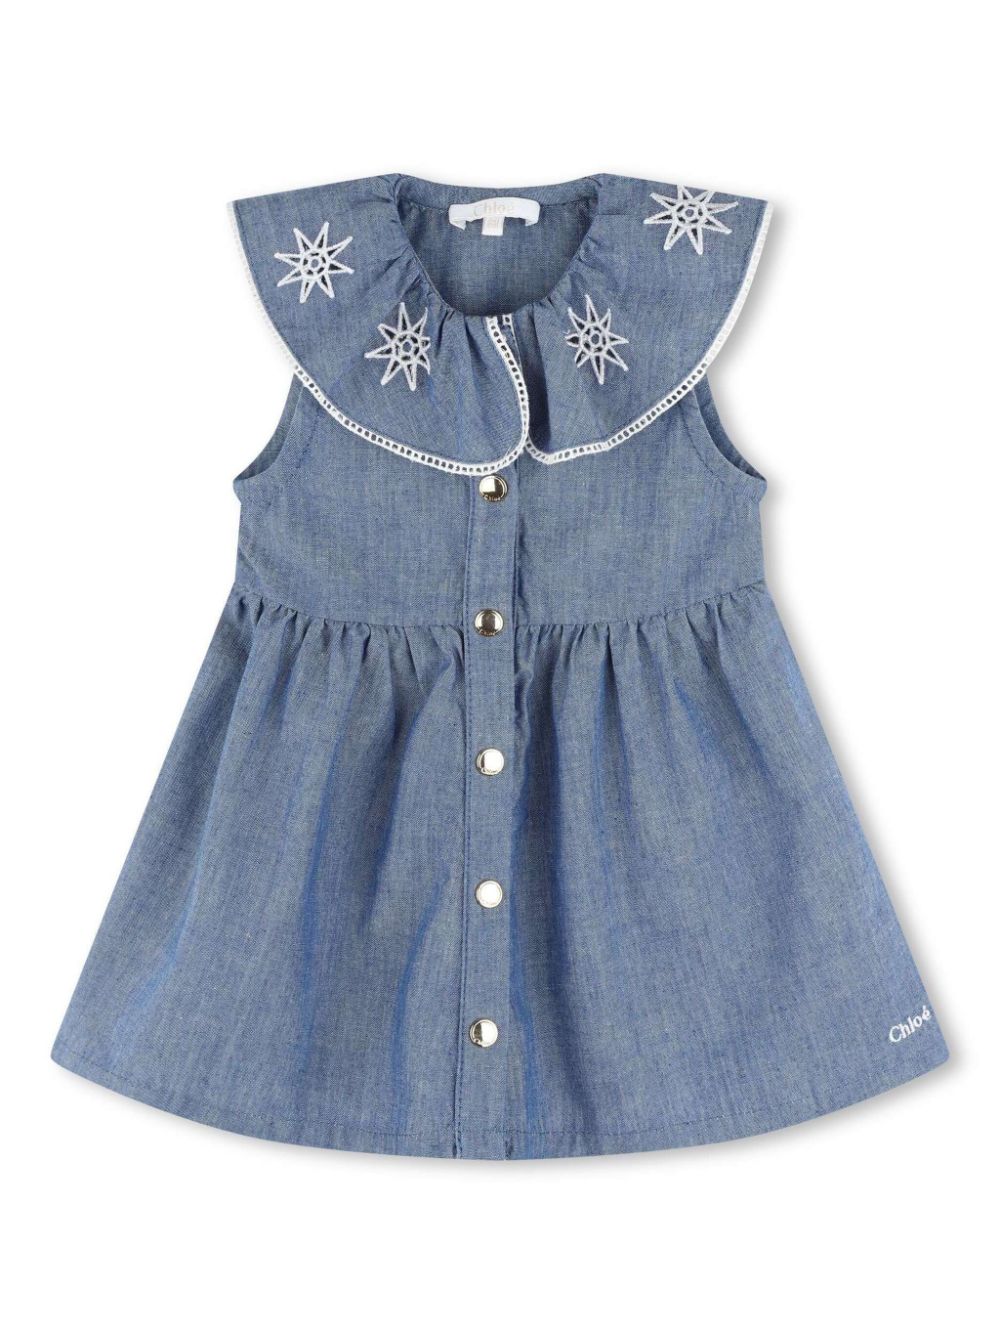 Blue dress for baby girl